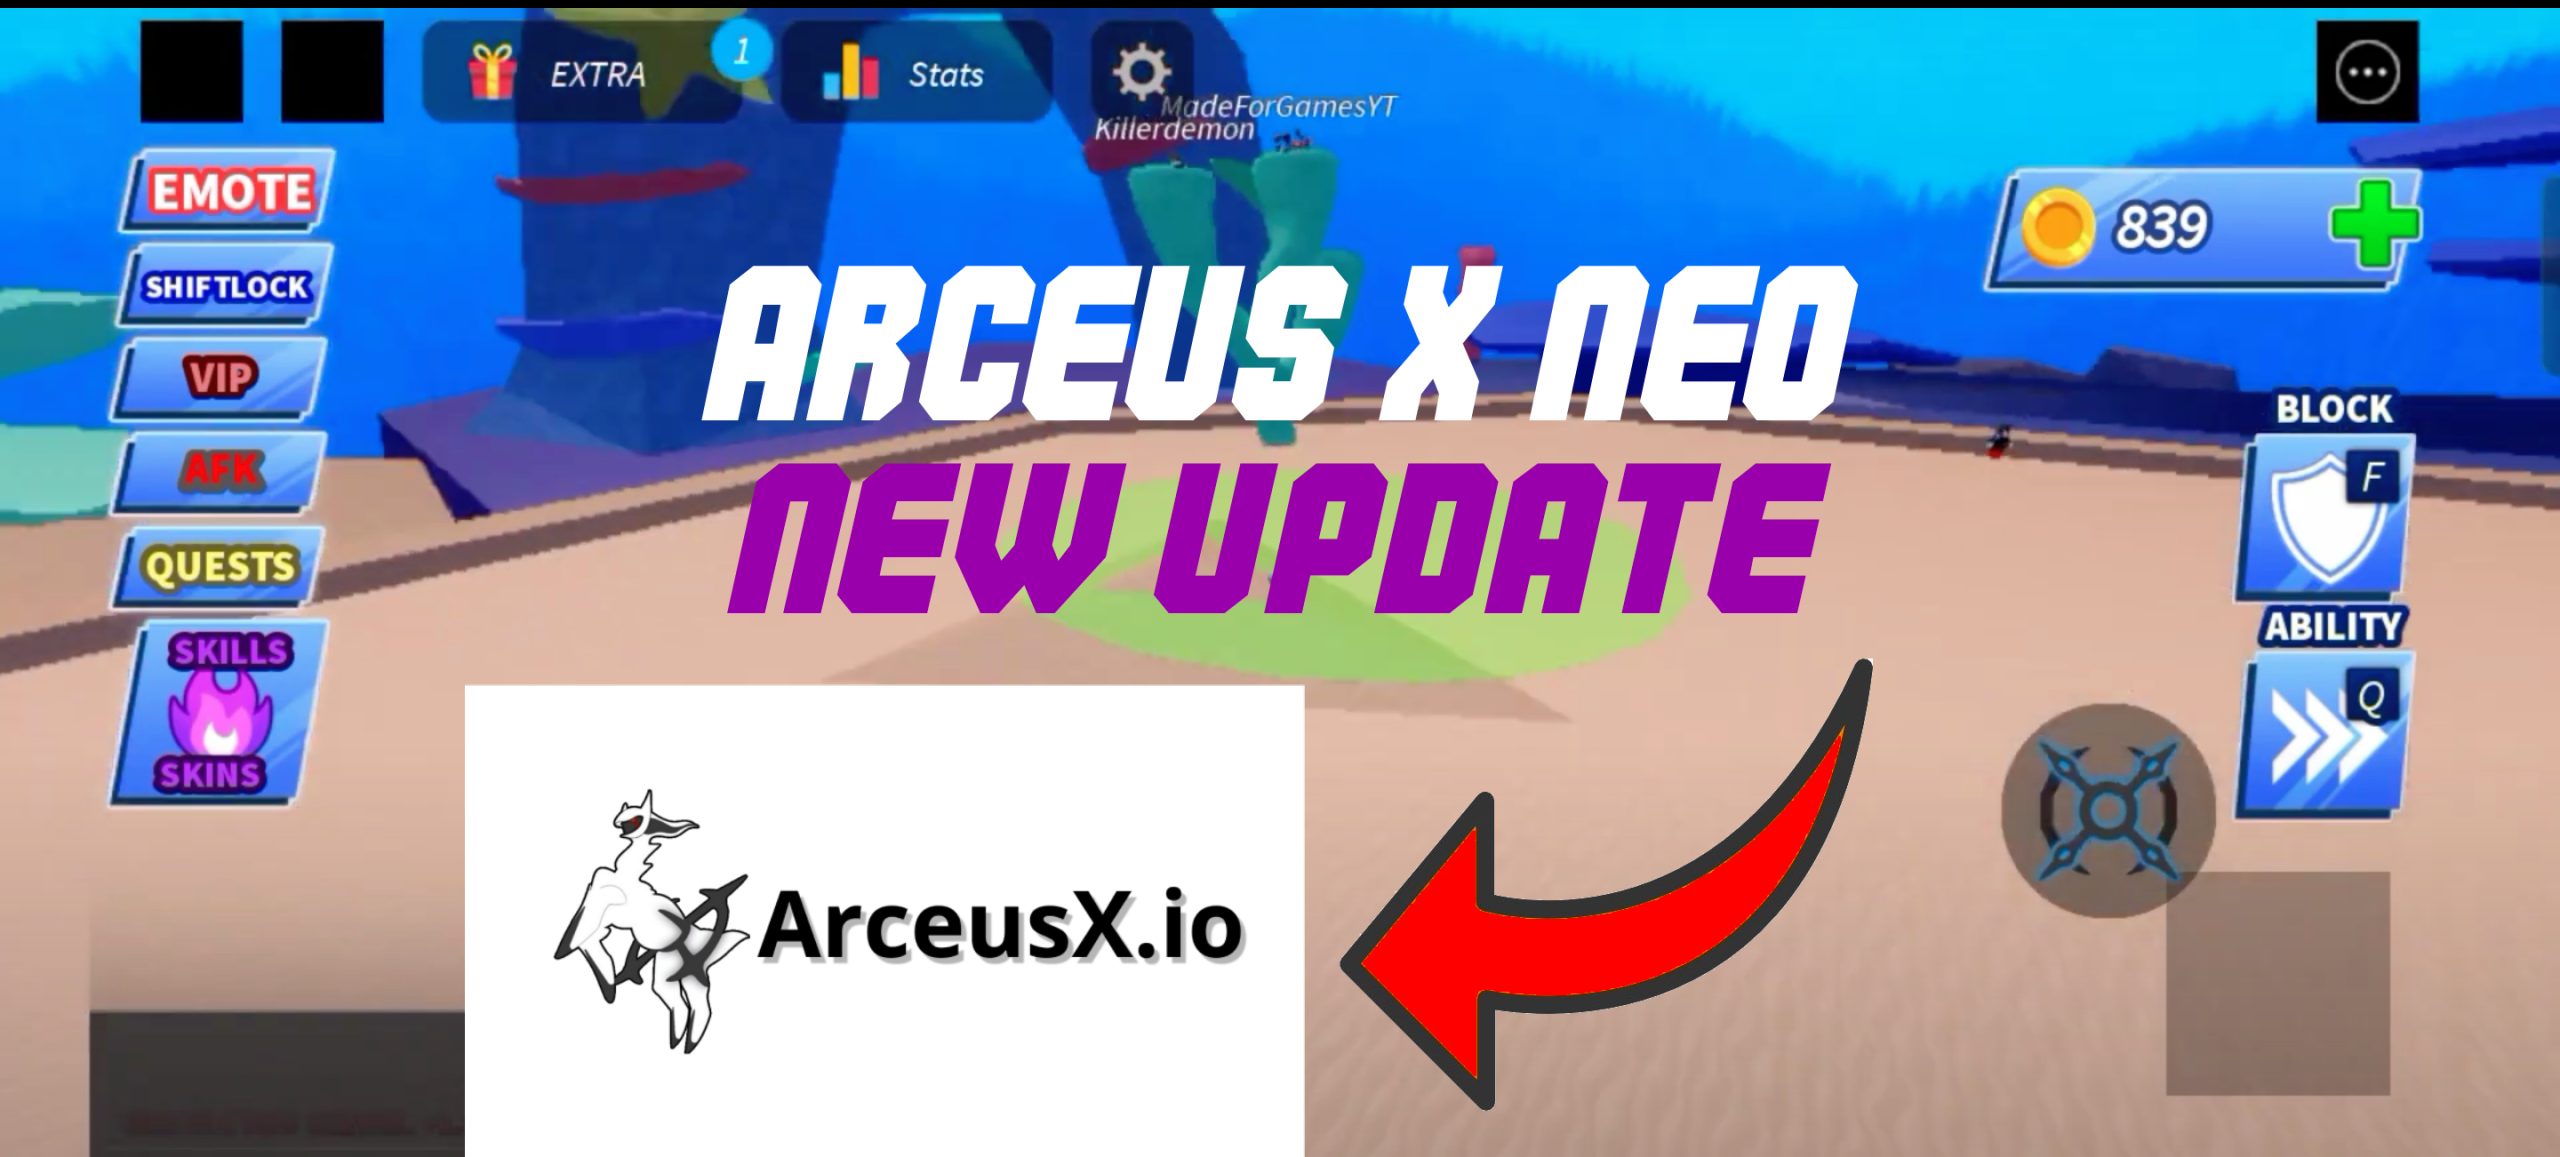 Arceus X NEO V1.0.7 Official APK - #1 Roblox Mod Menu